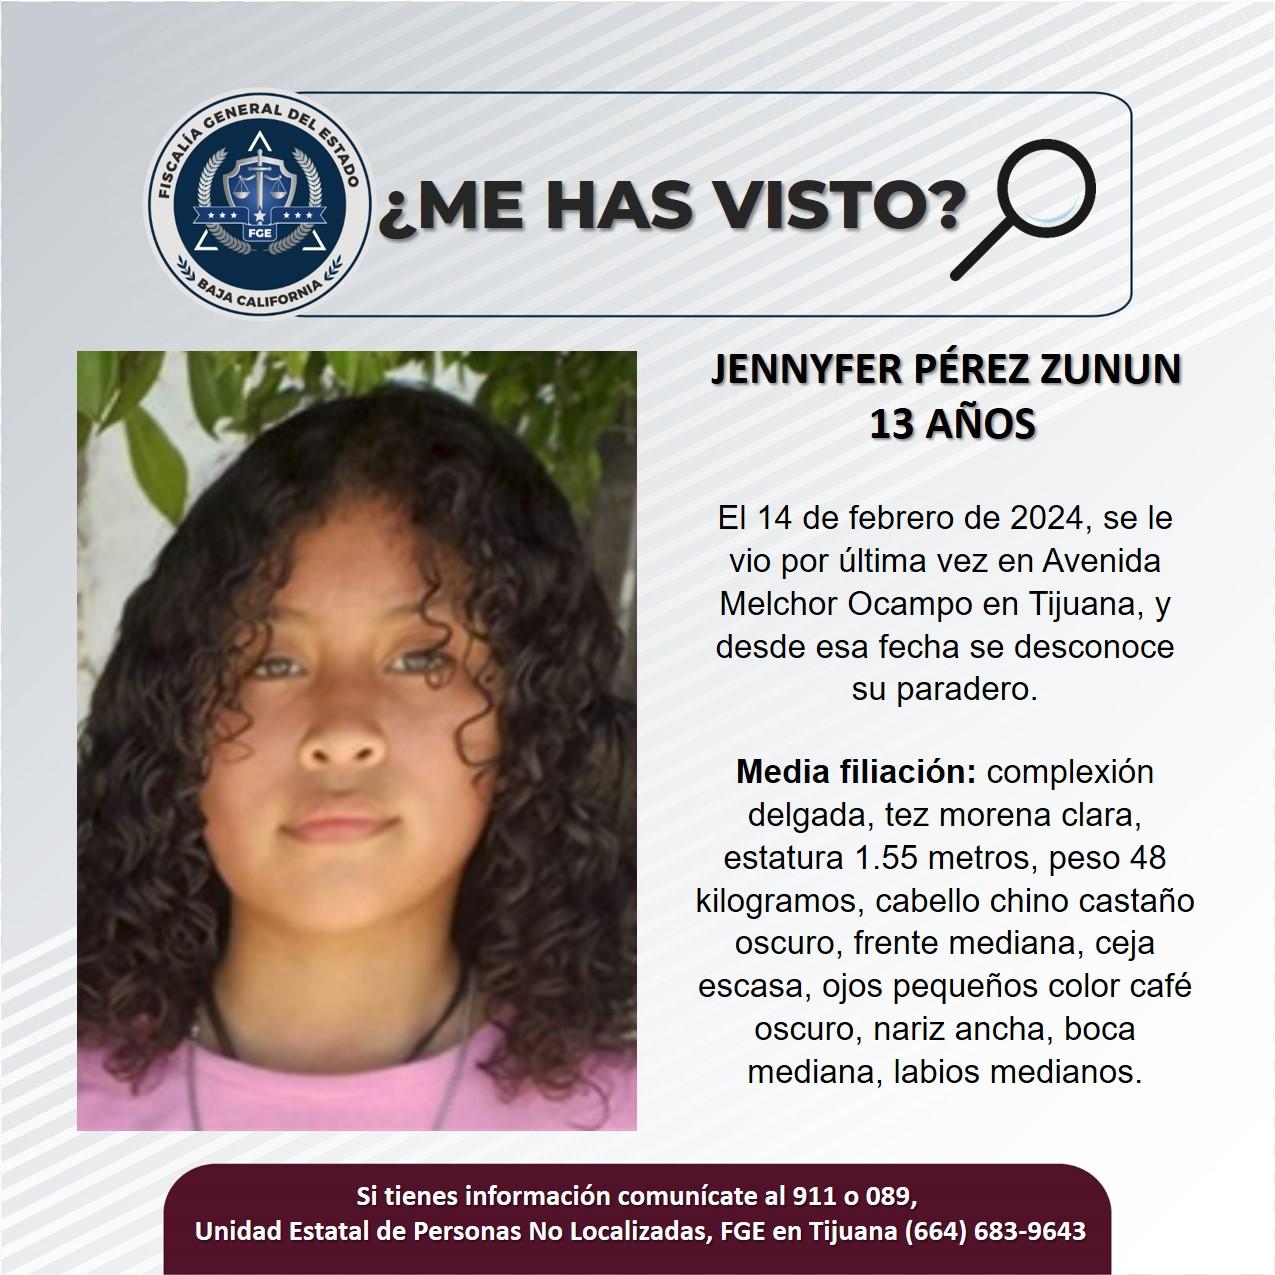 Servicio social: Se busca a Jennyfer Pérez Zunun de 13 años